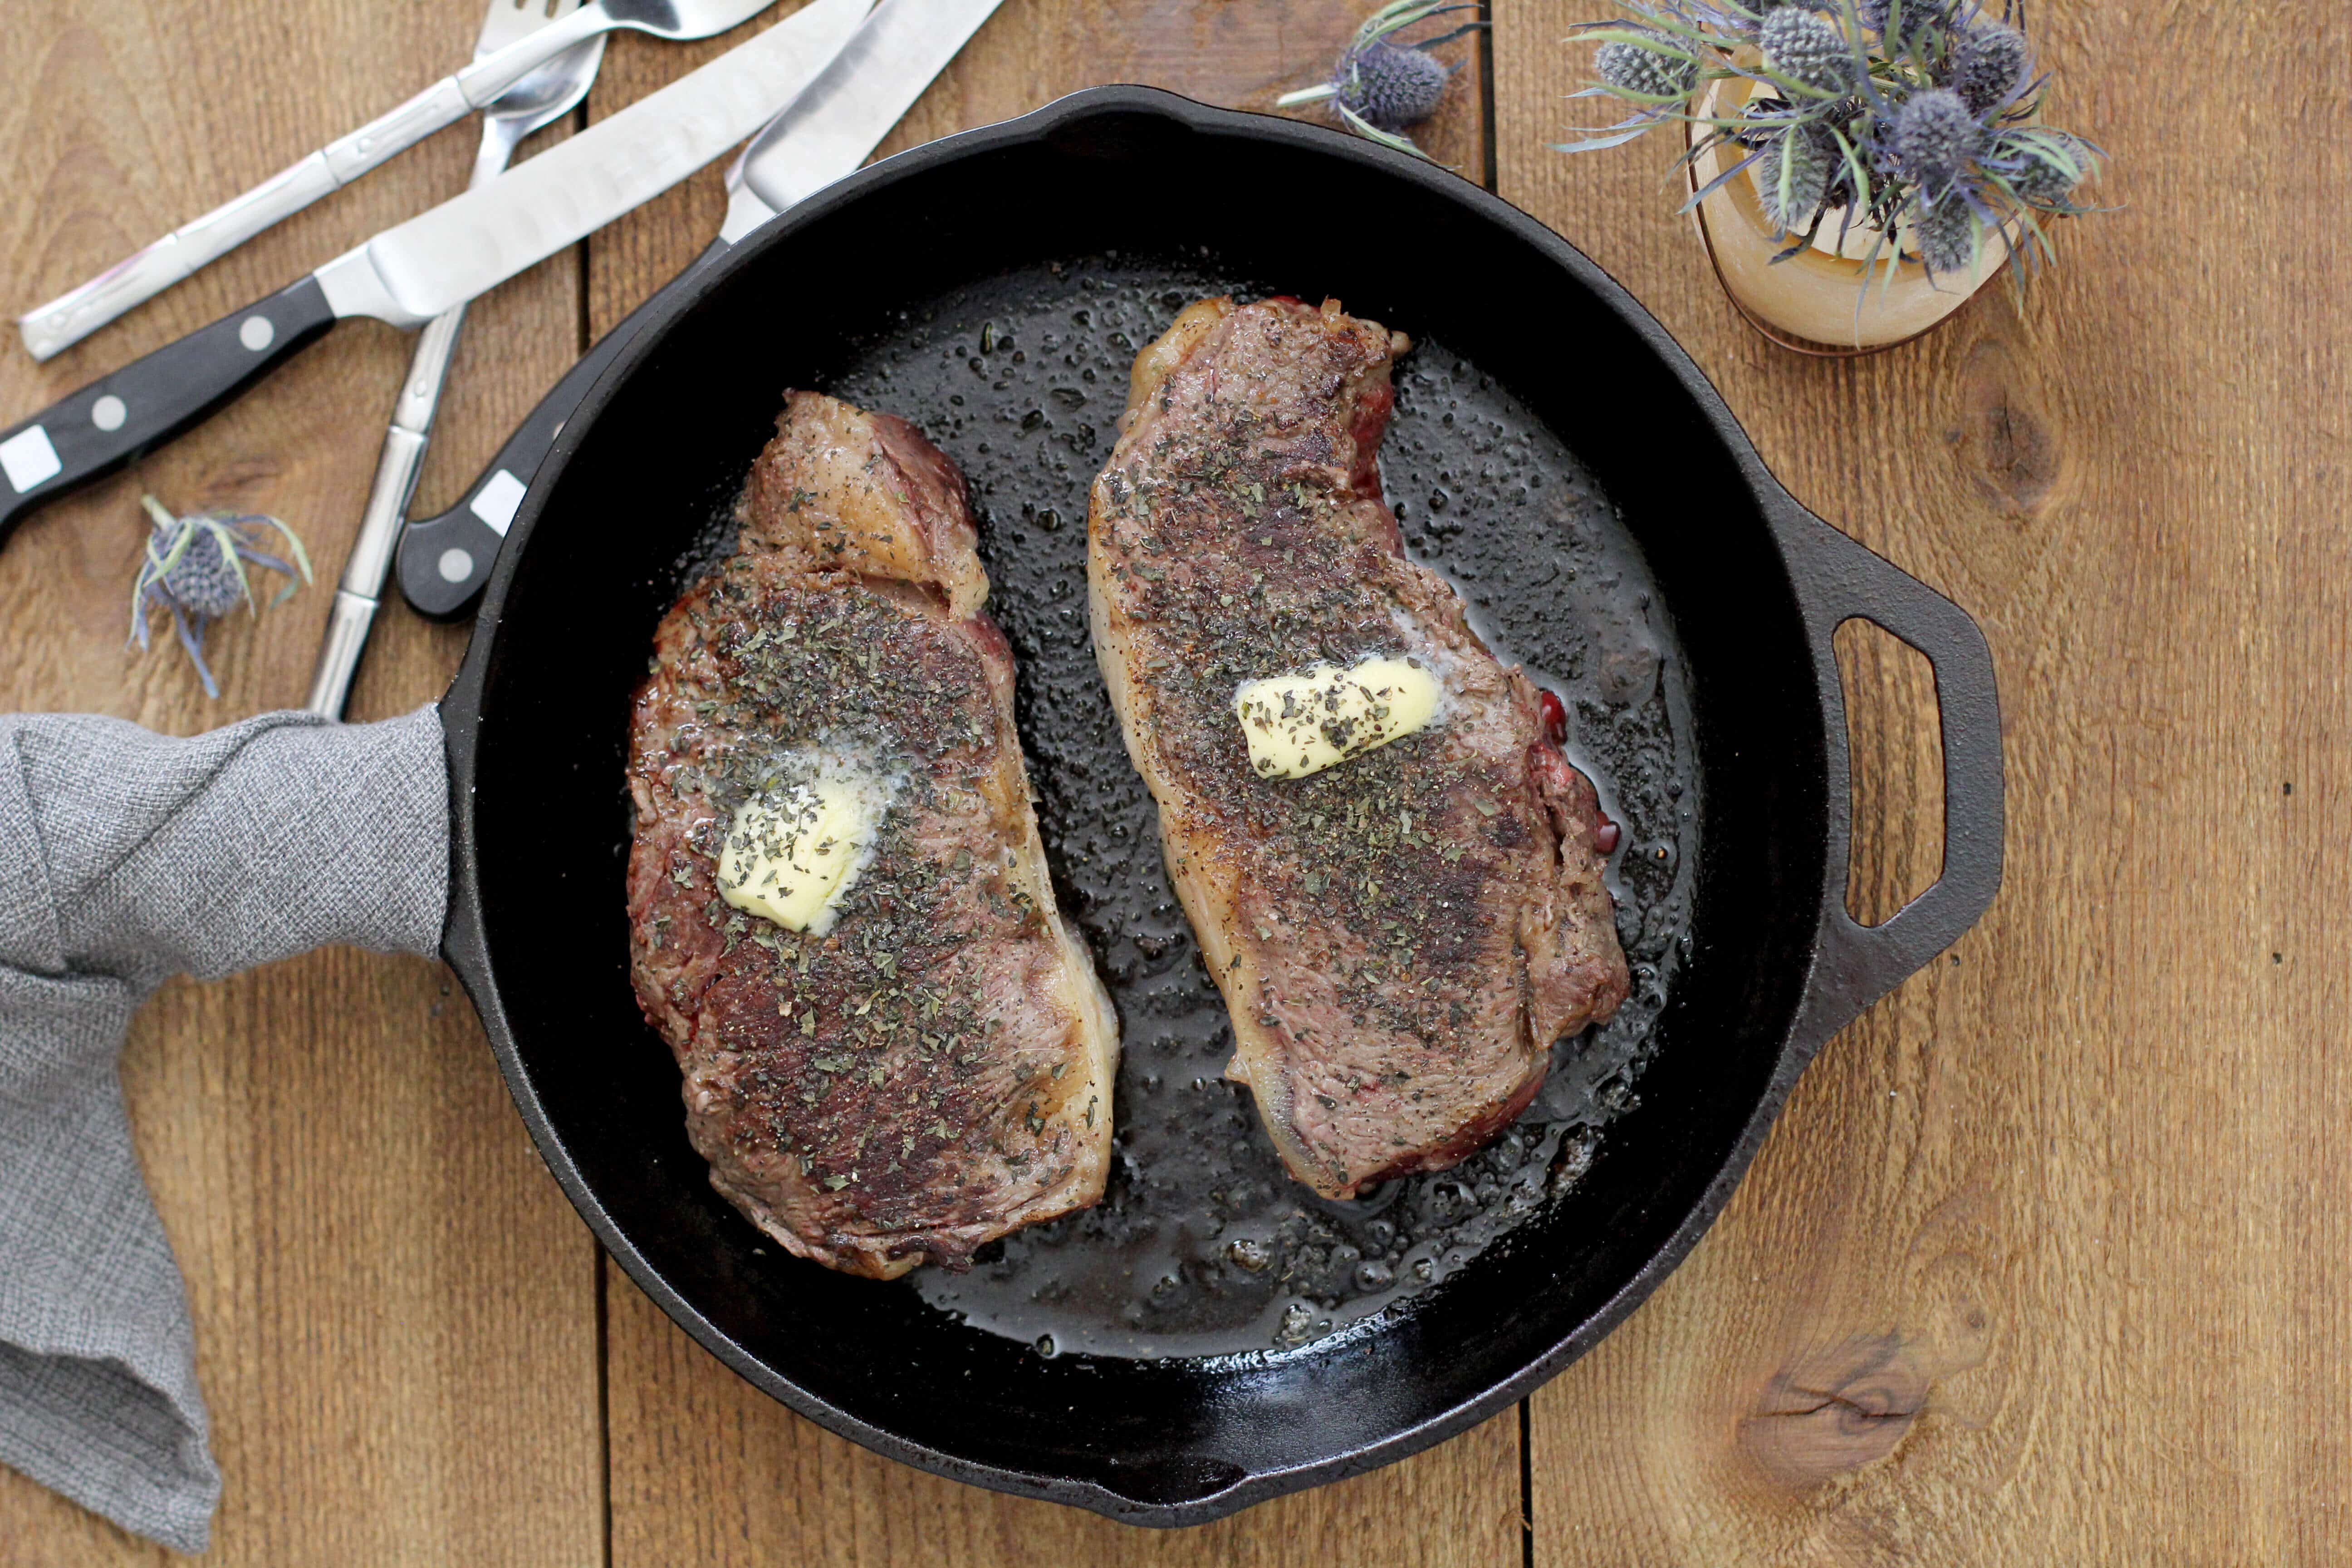 Grass-fed steak recipe - Dr. Axe